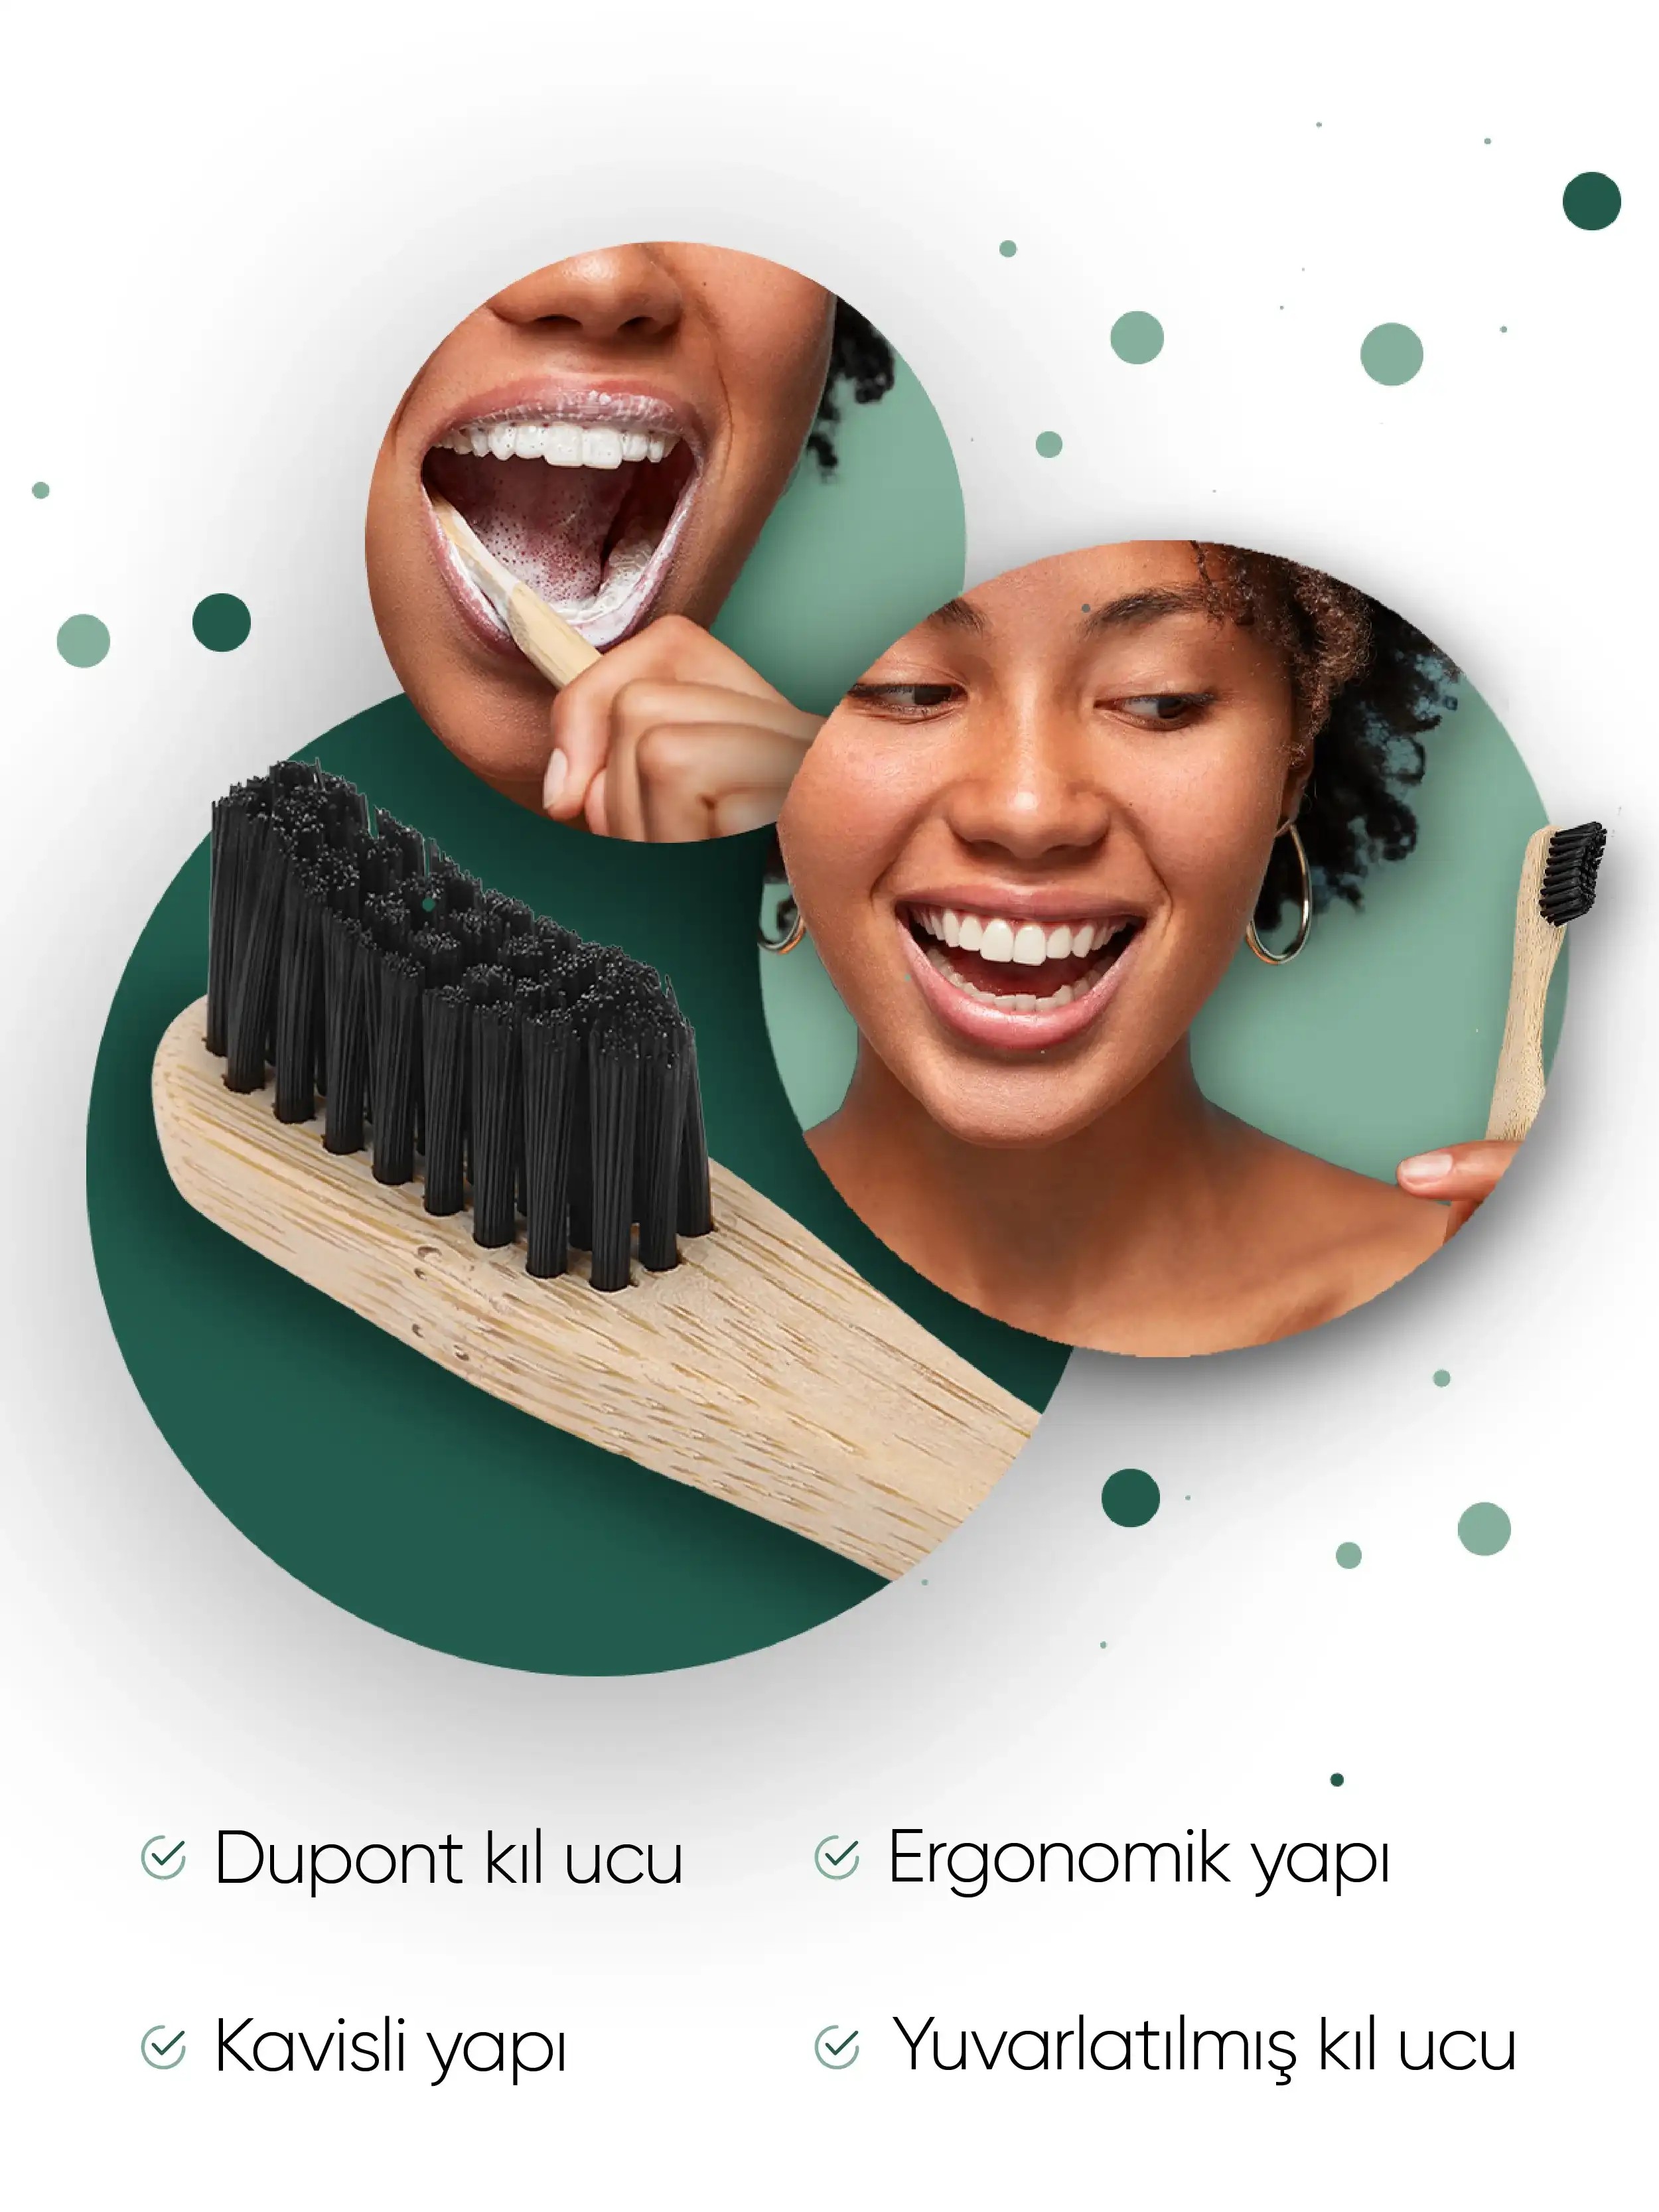 T-Brush Bambu Diş Fırçası - Koyu Gri